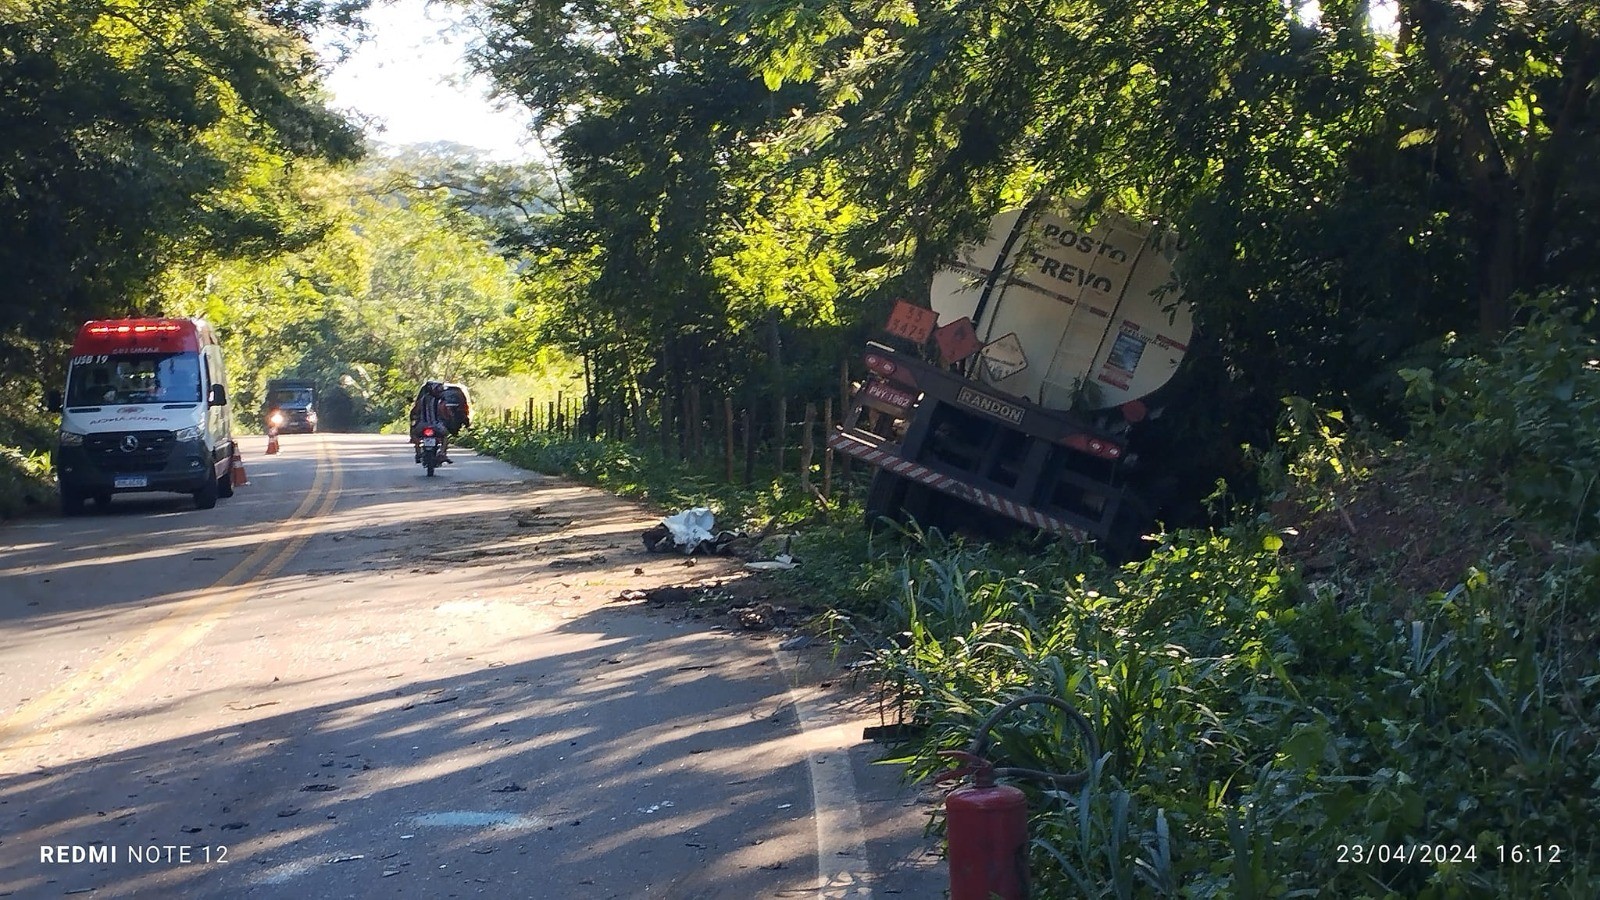 Acidente entre carro e carreta mata motorista na rodovia MG-120